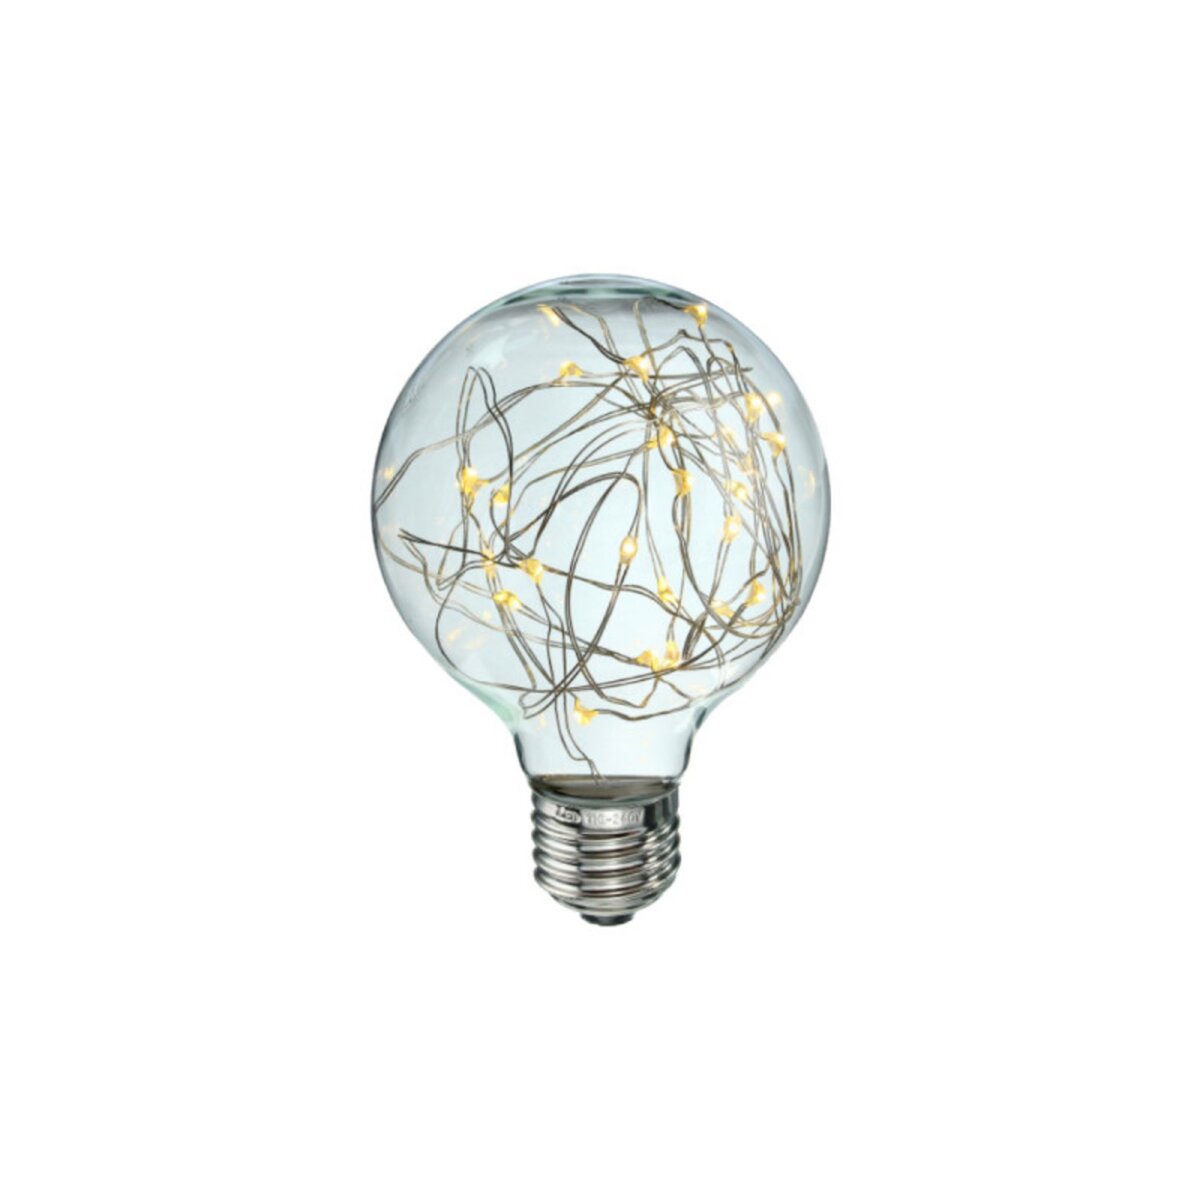  Ampoule LED globe ambrée à fil de cuivre XXCELL - 2 W - 2200 K - E27